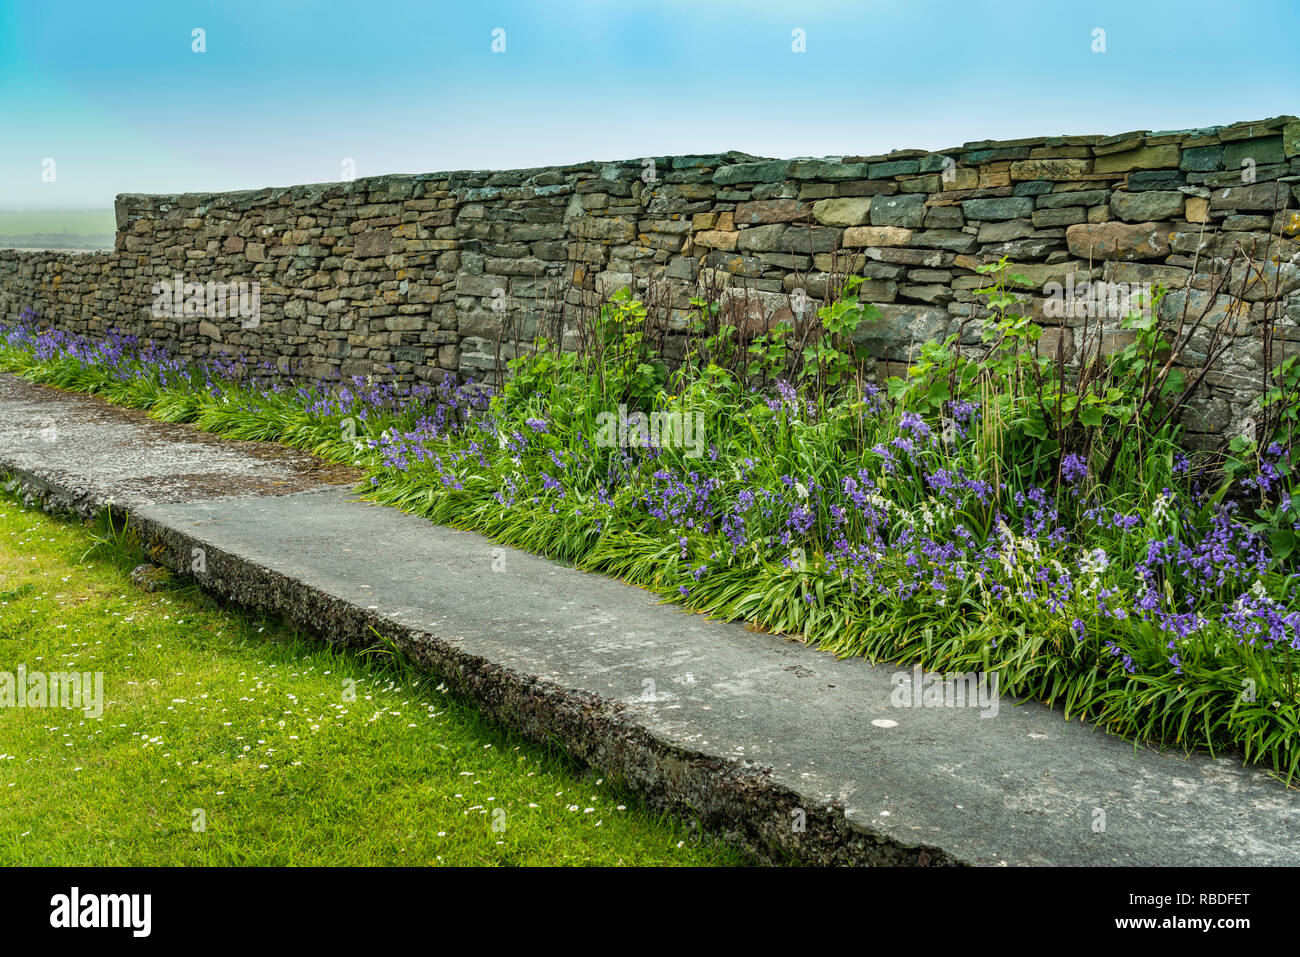 Ein Stein Zaun und Blumen an den Jarlshof prähistorischen und nordischen Siedlung archäologischen Stätte in der Shetlandinseln, Schottland, Großbritannien, Europa. Stockfoto